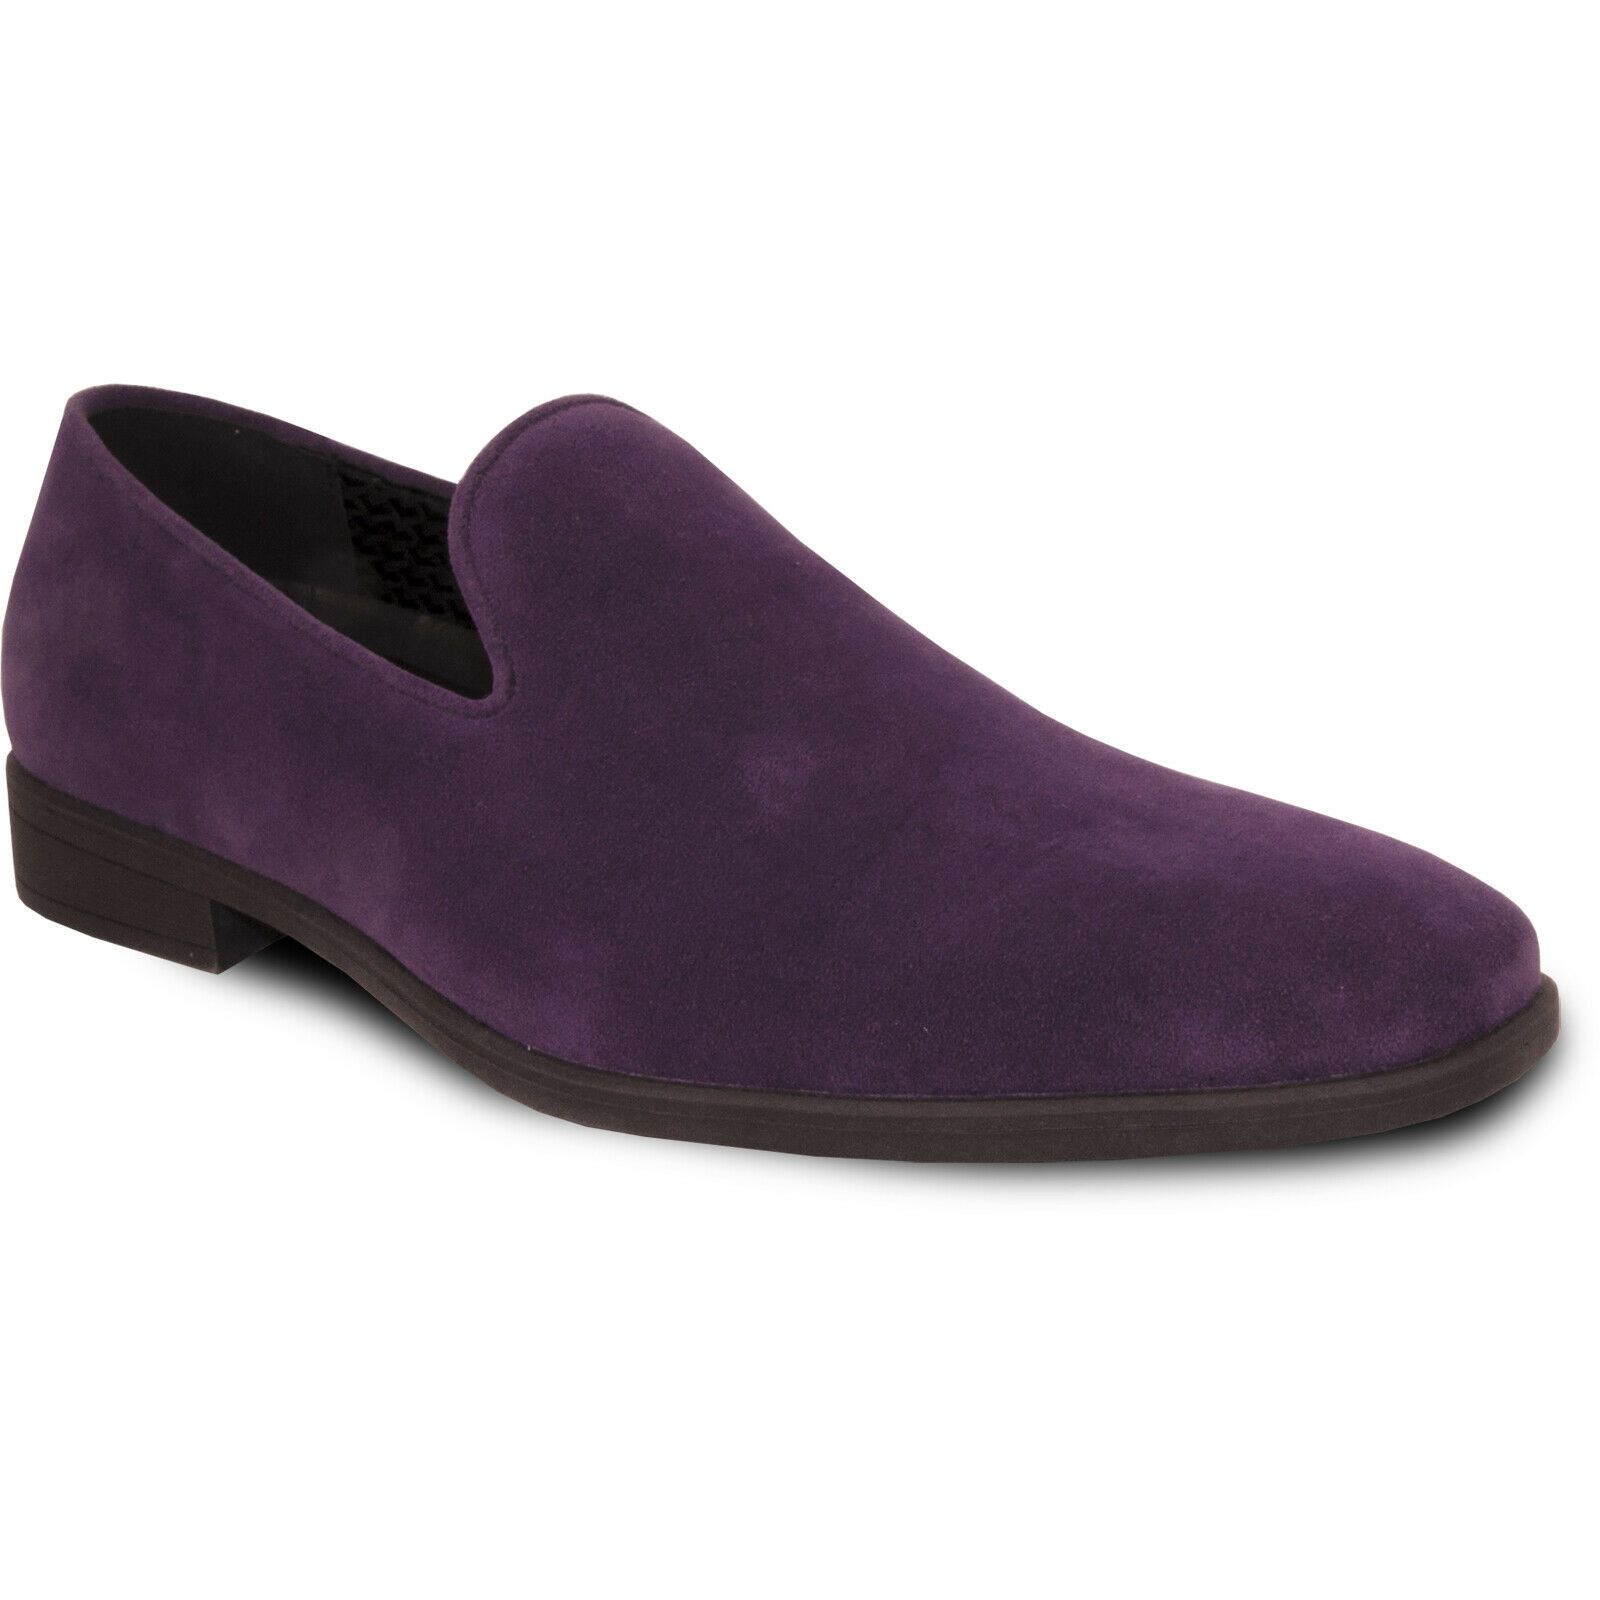 Vangelo Men Dress Shoe KING-5 Loafer Slip On Formal Tuxedo for Prom and Wedding Purple 10M - image 1 of 7